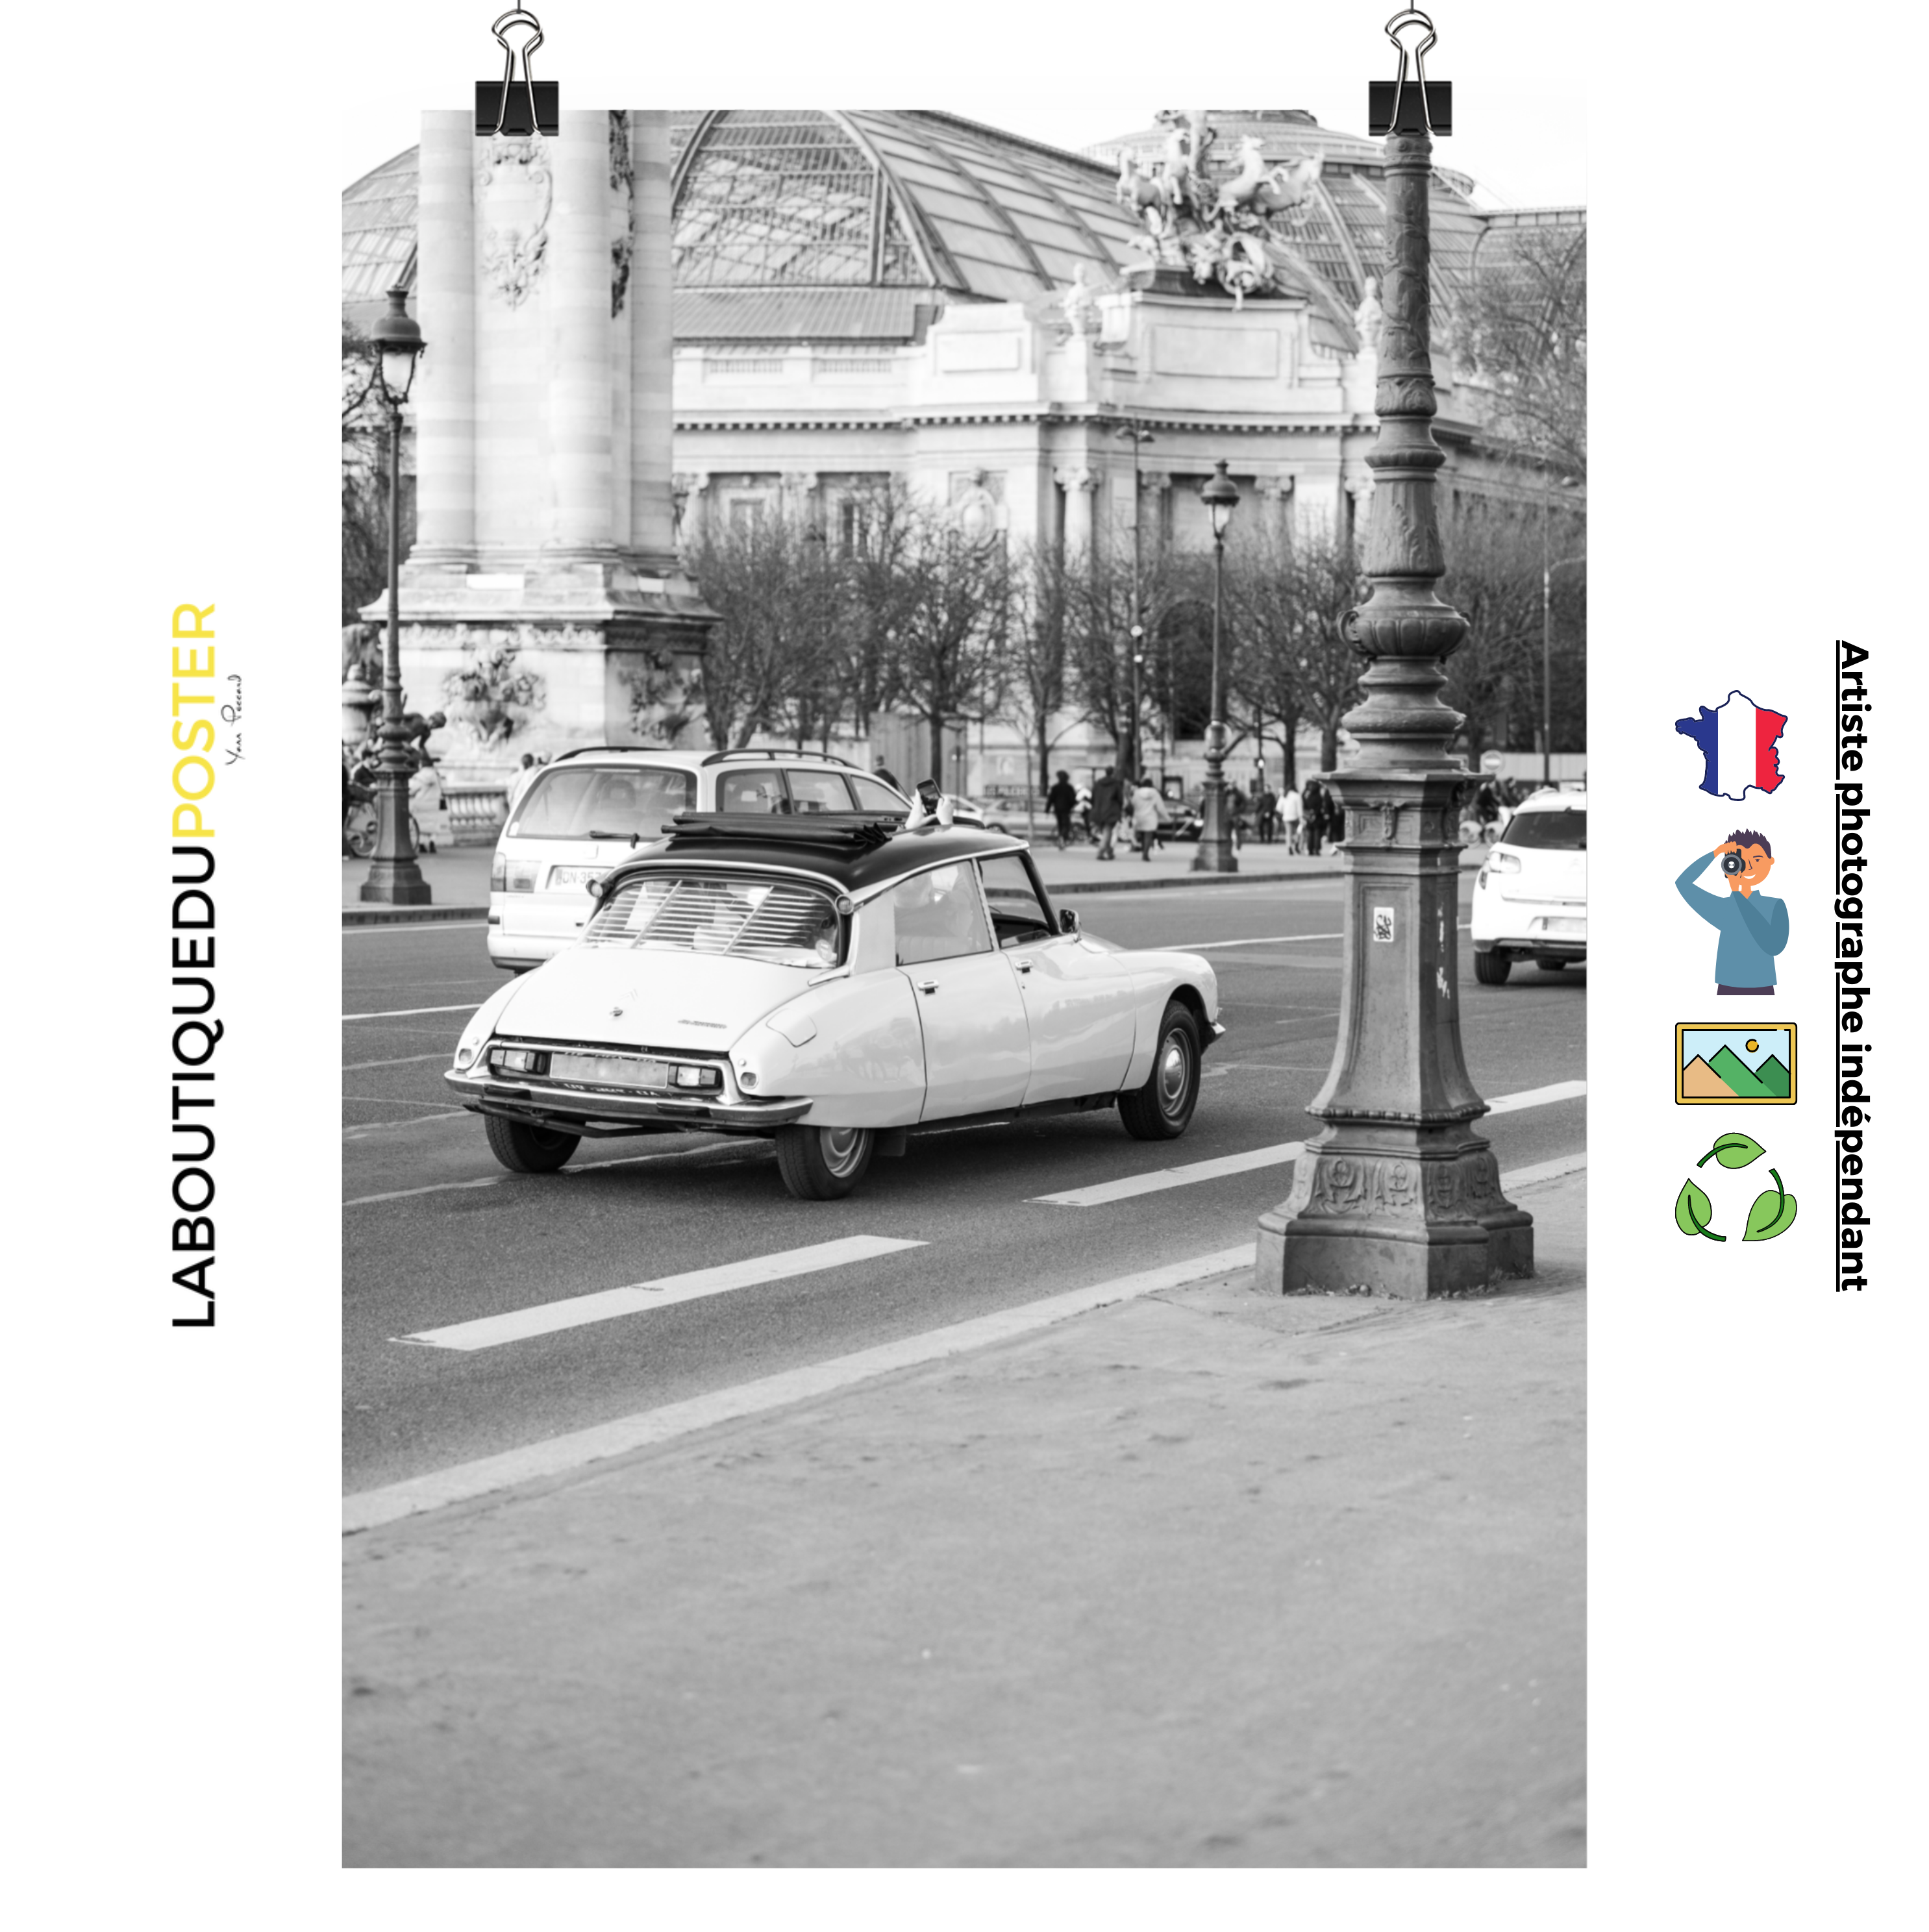 Poster mural - Automobiles DS vintage – Photographie de voiture – Poster photo, poster XXL, Photo d’art, photographie murale et des posters muraux des photographies de rue unique au monde. La boutique de posters créée par un Photographe français.